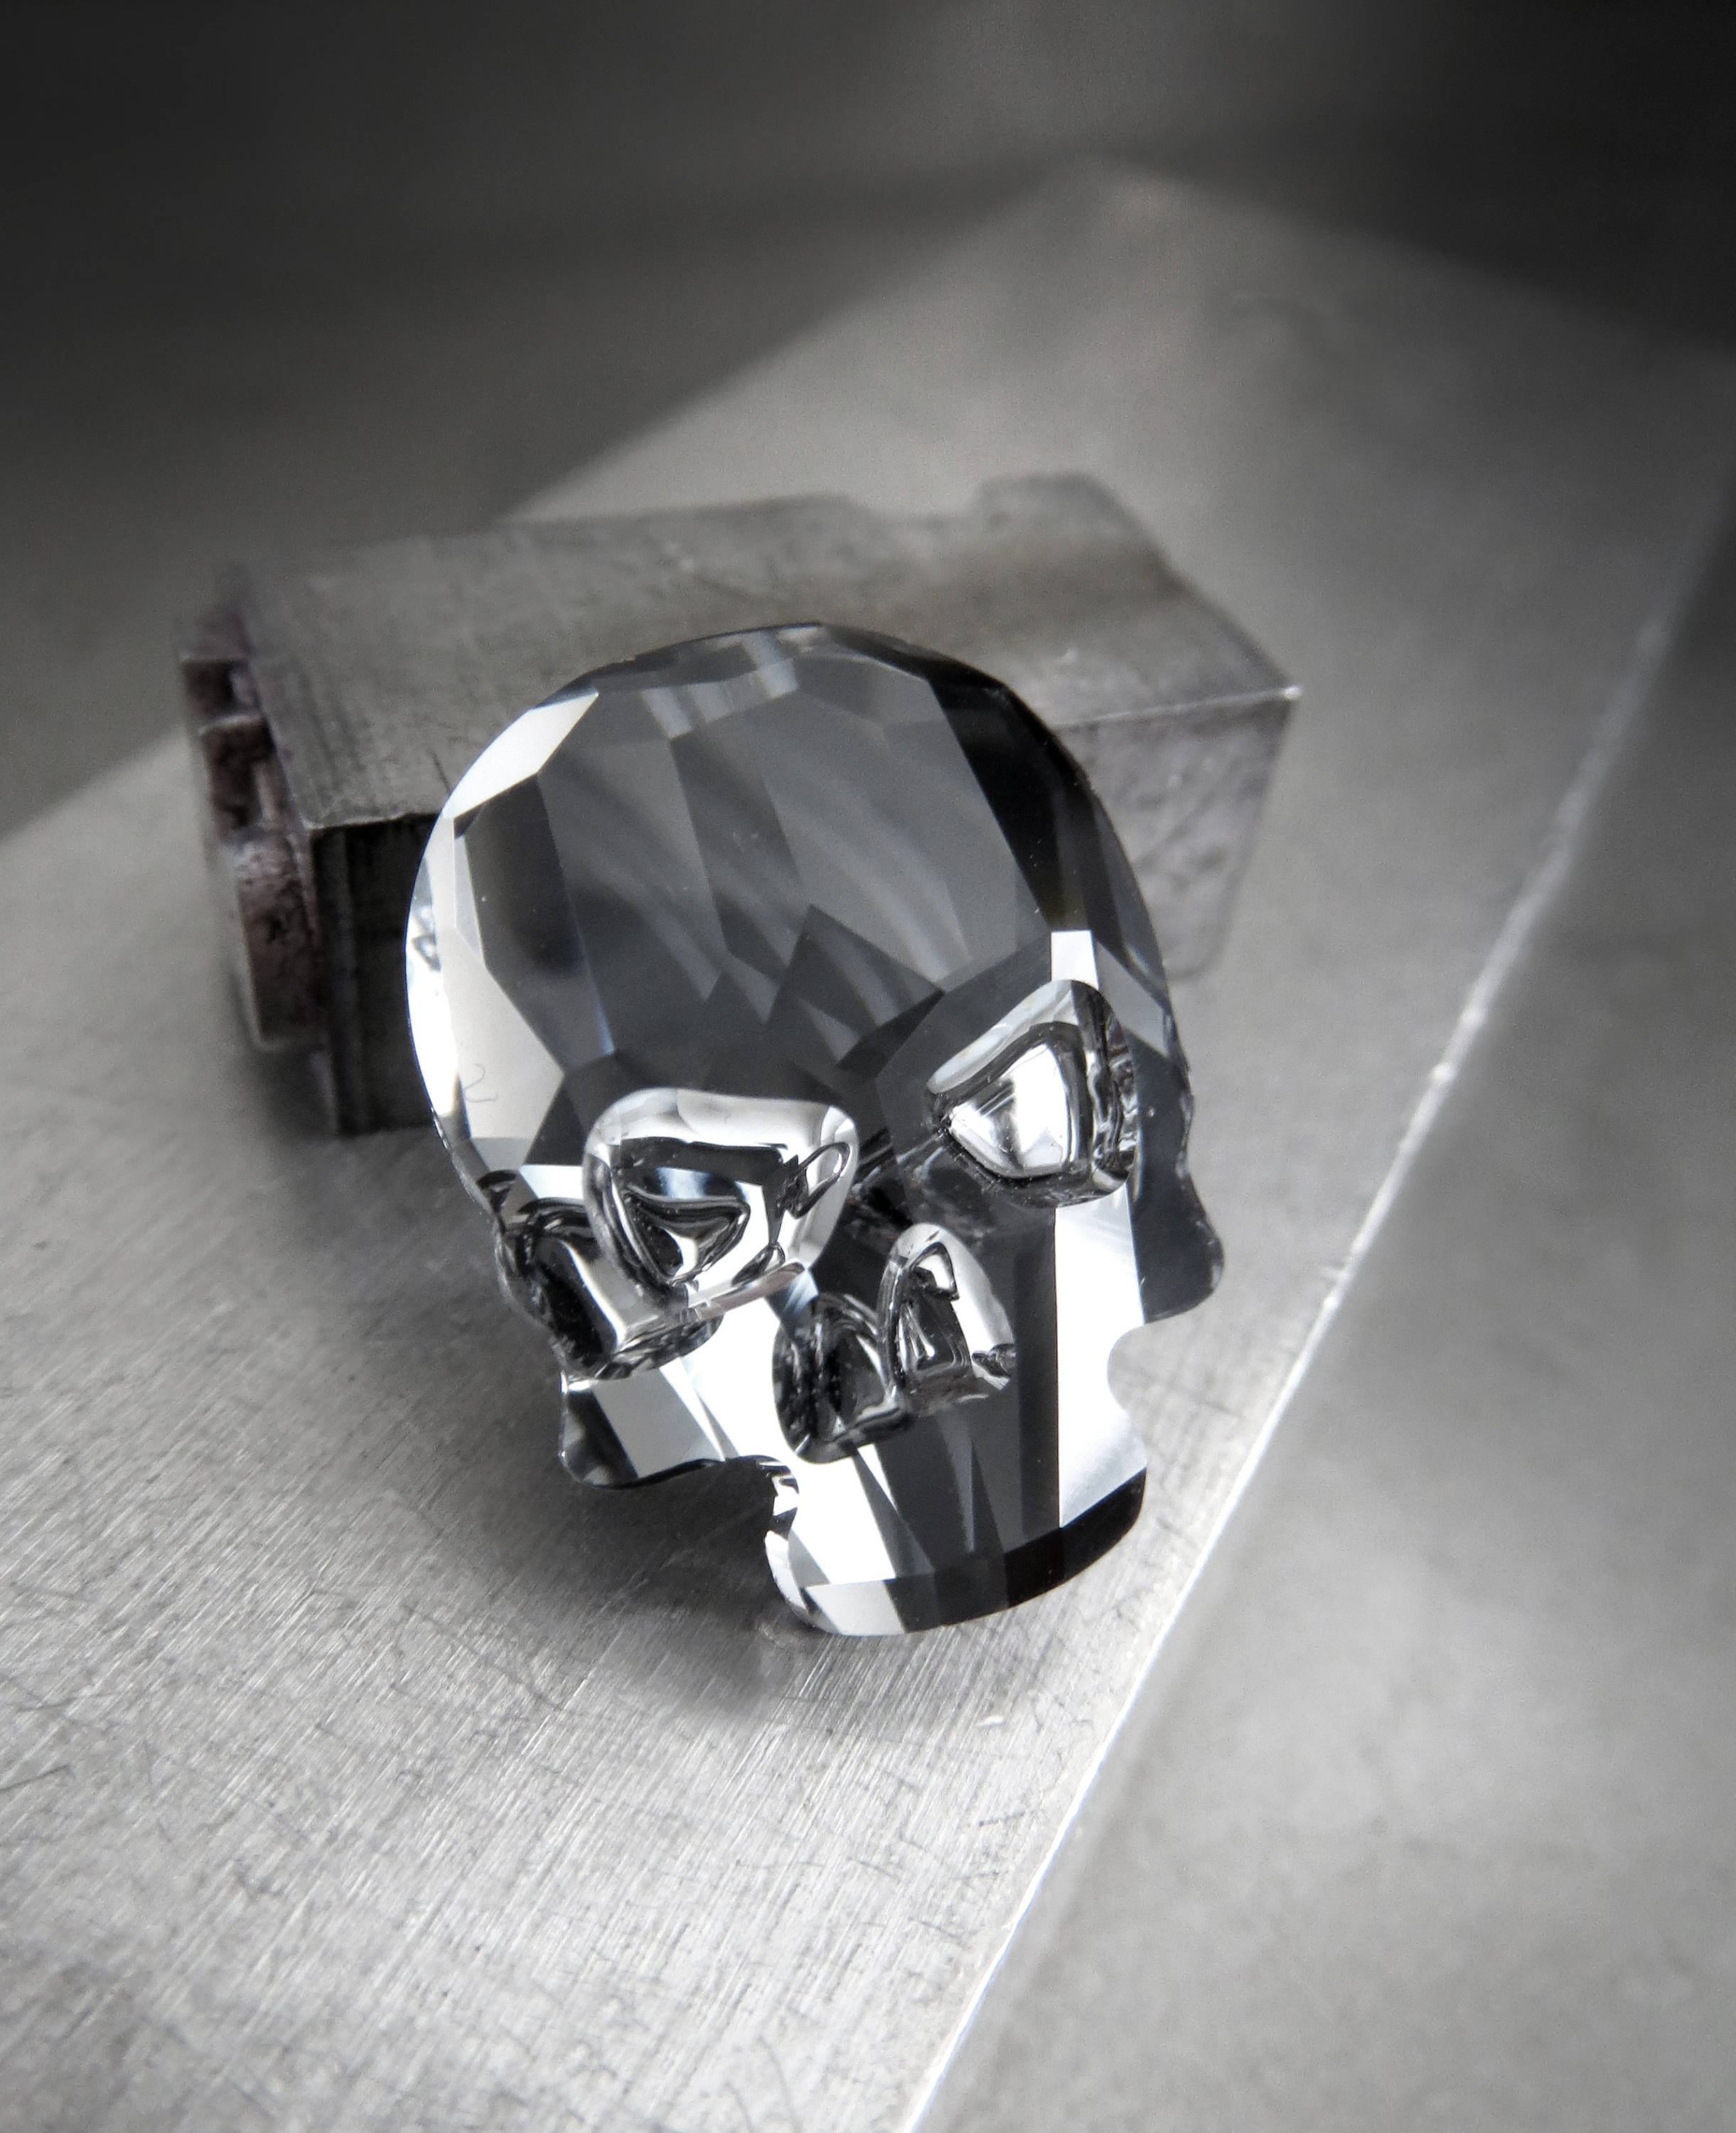 Small Crystal Skull Pin or Magnet - Midnight Black